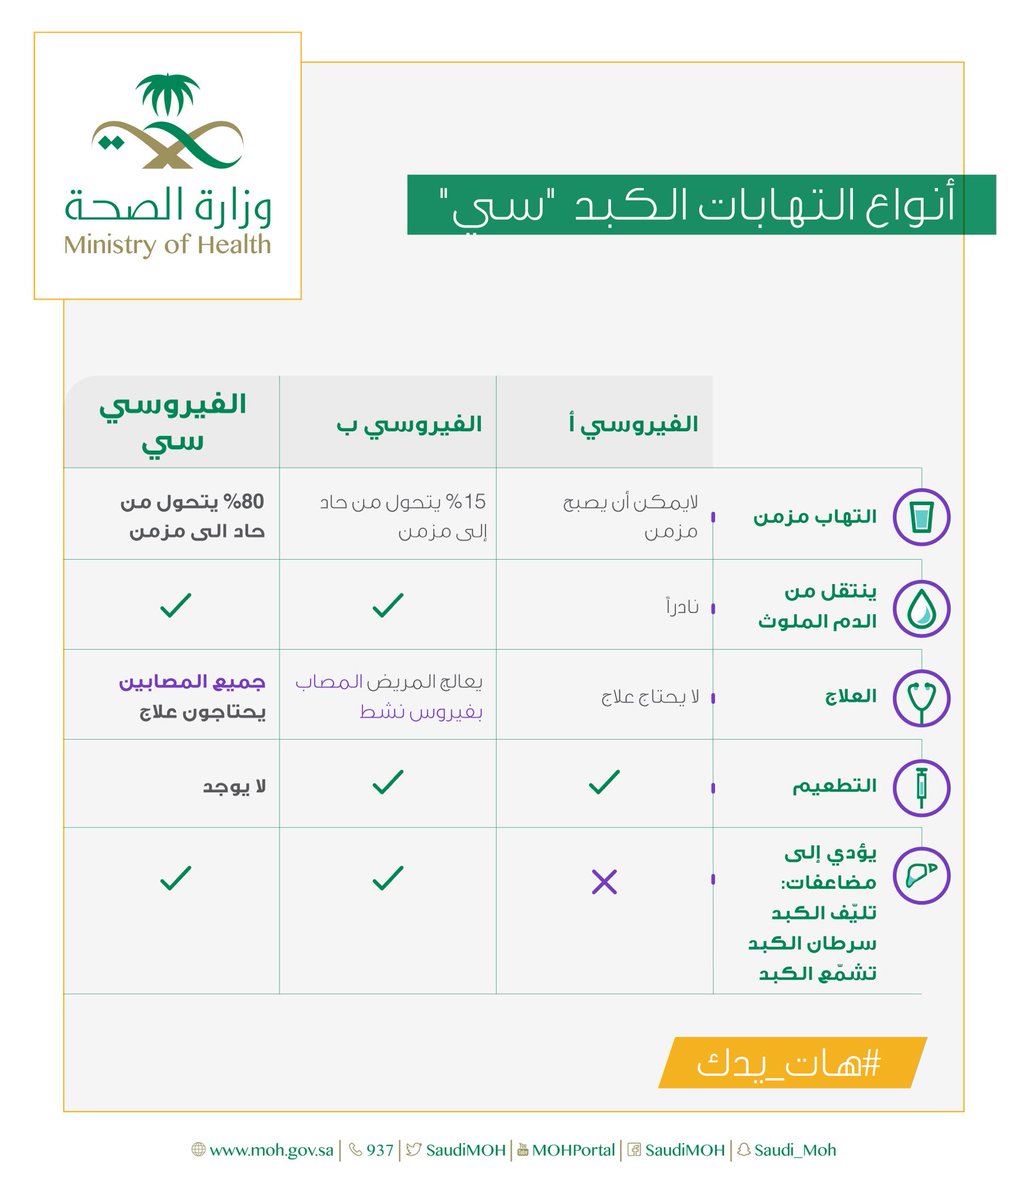 وتويتر وزارة الصحة السعودية علاج التهاب الكبد الوبائي سي متوفر في جميع المراكز الاستشارية ، ومعدل شفاءه أكثر من 95 بإذن الله امد يدك